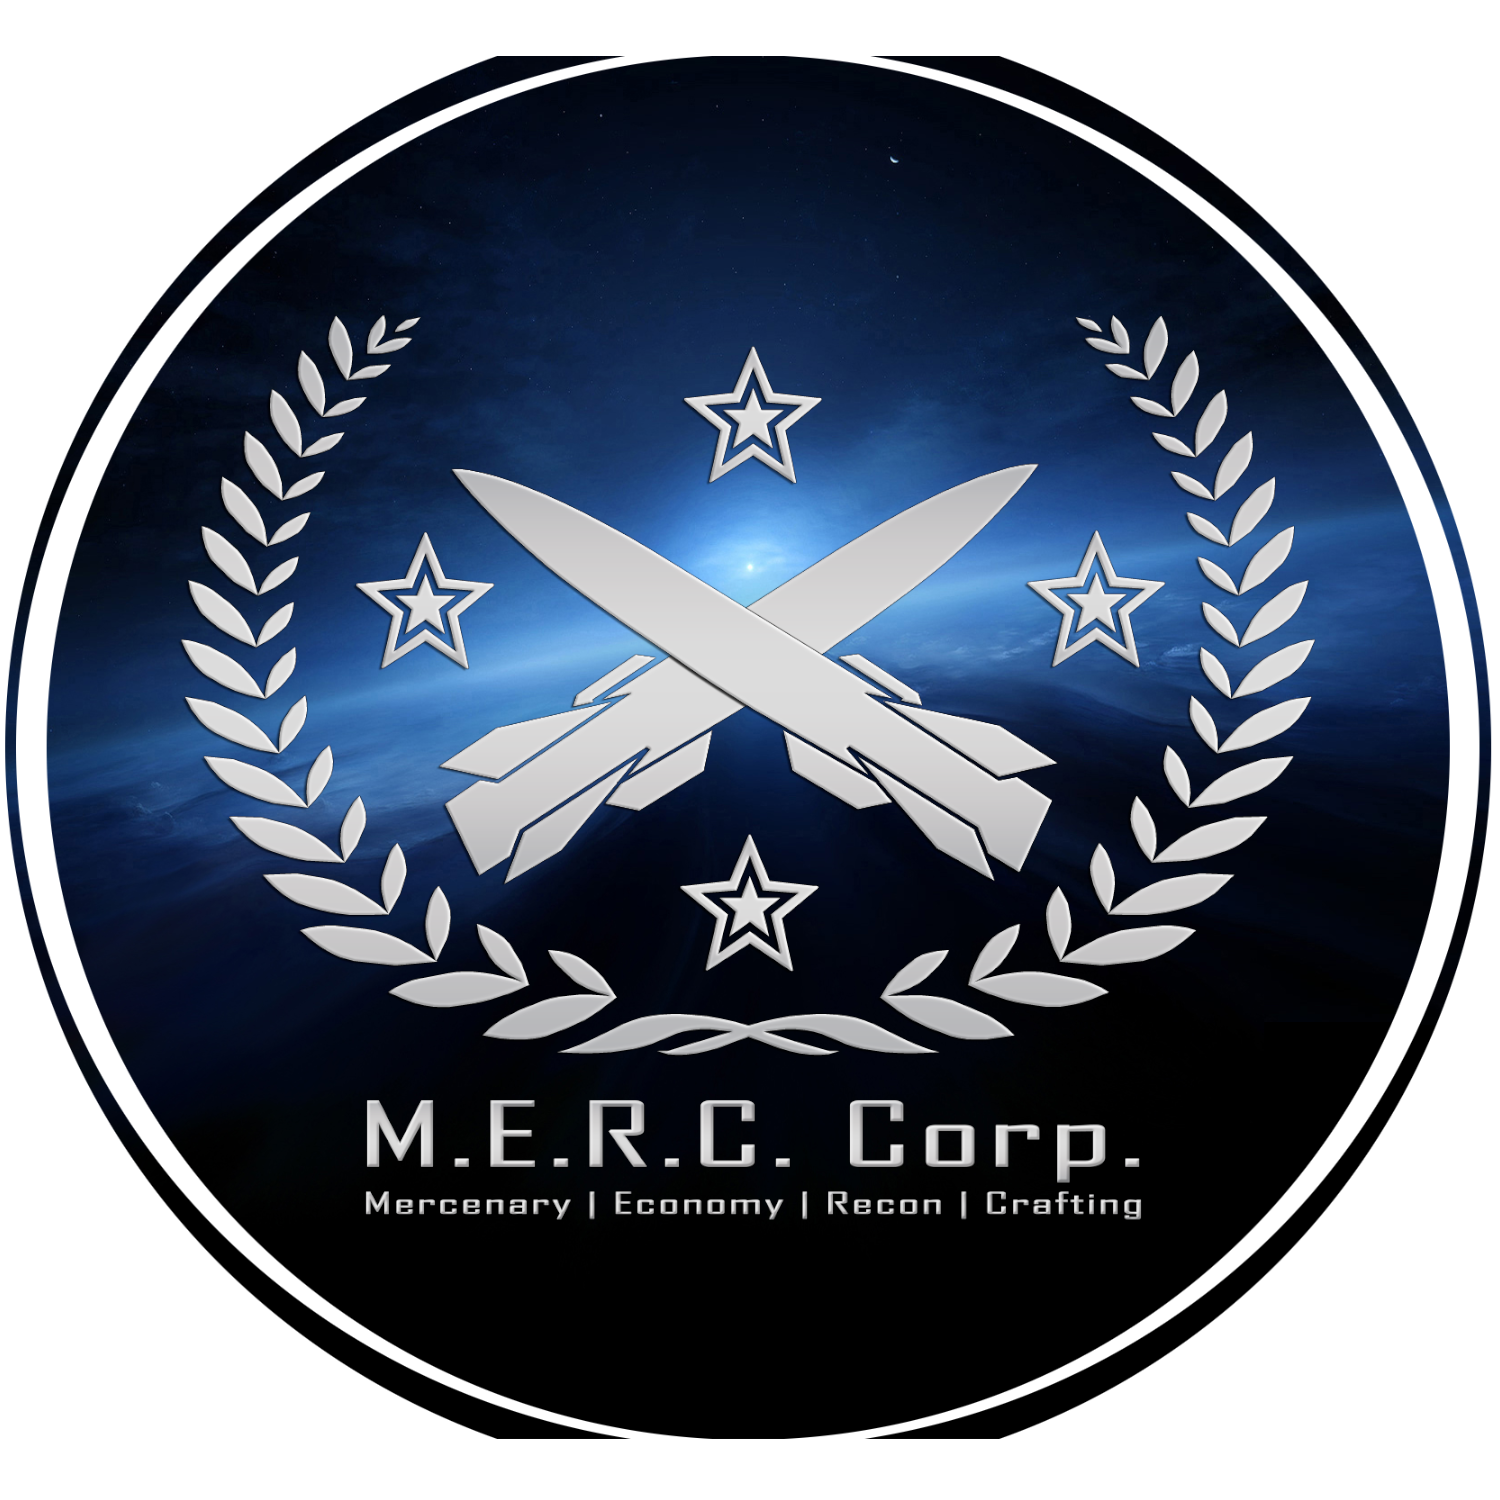 MERCCORP